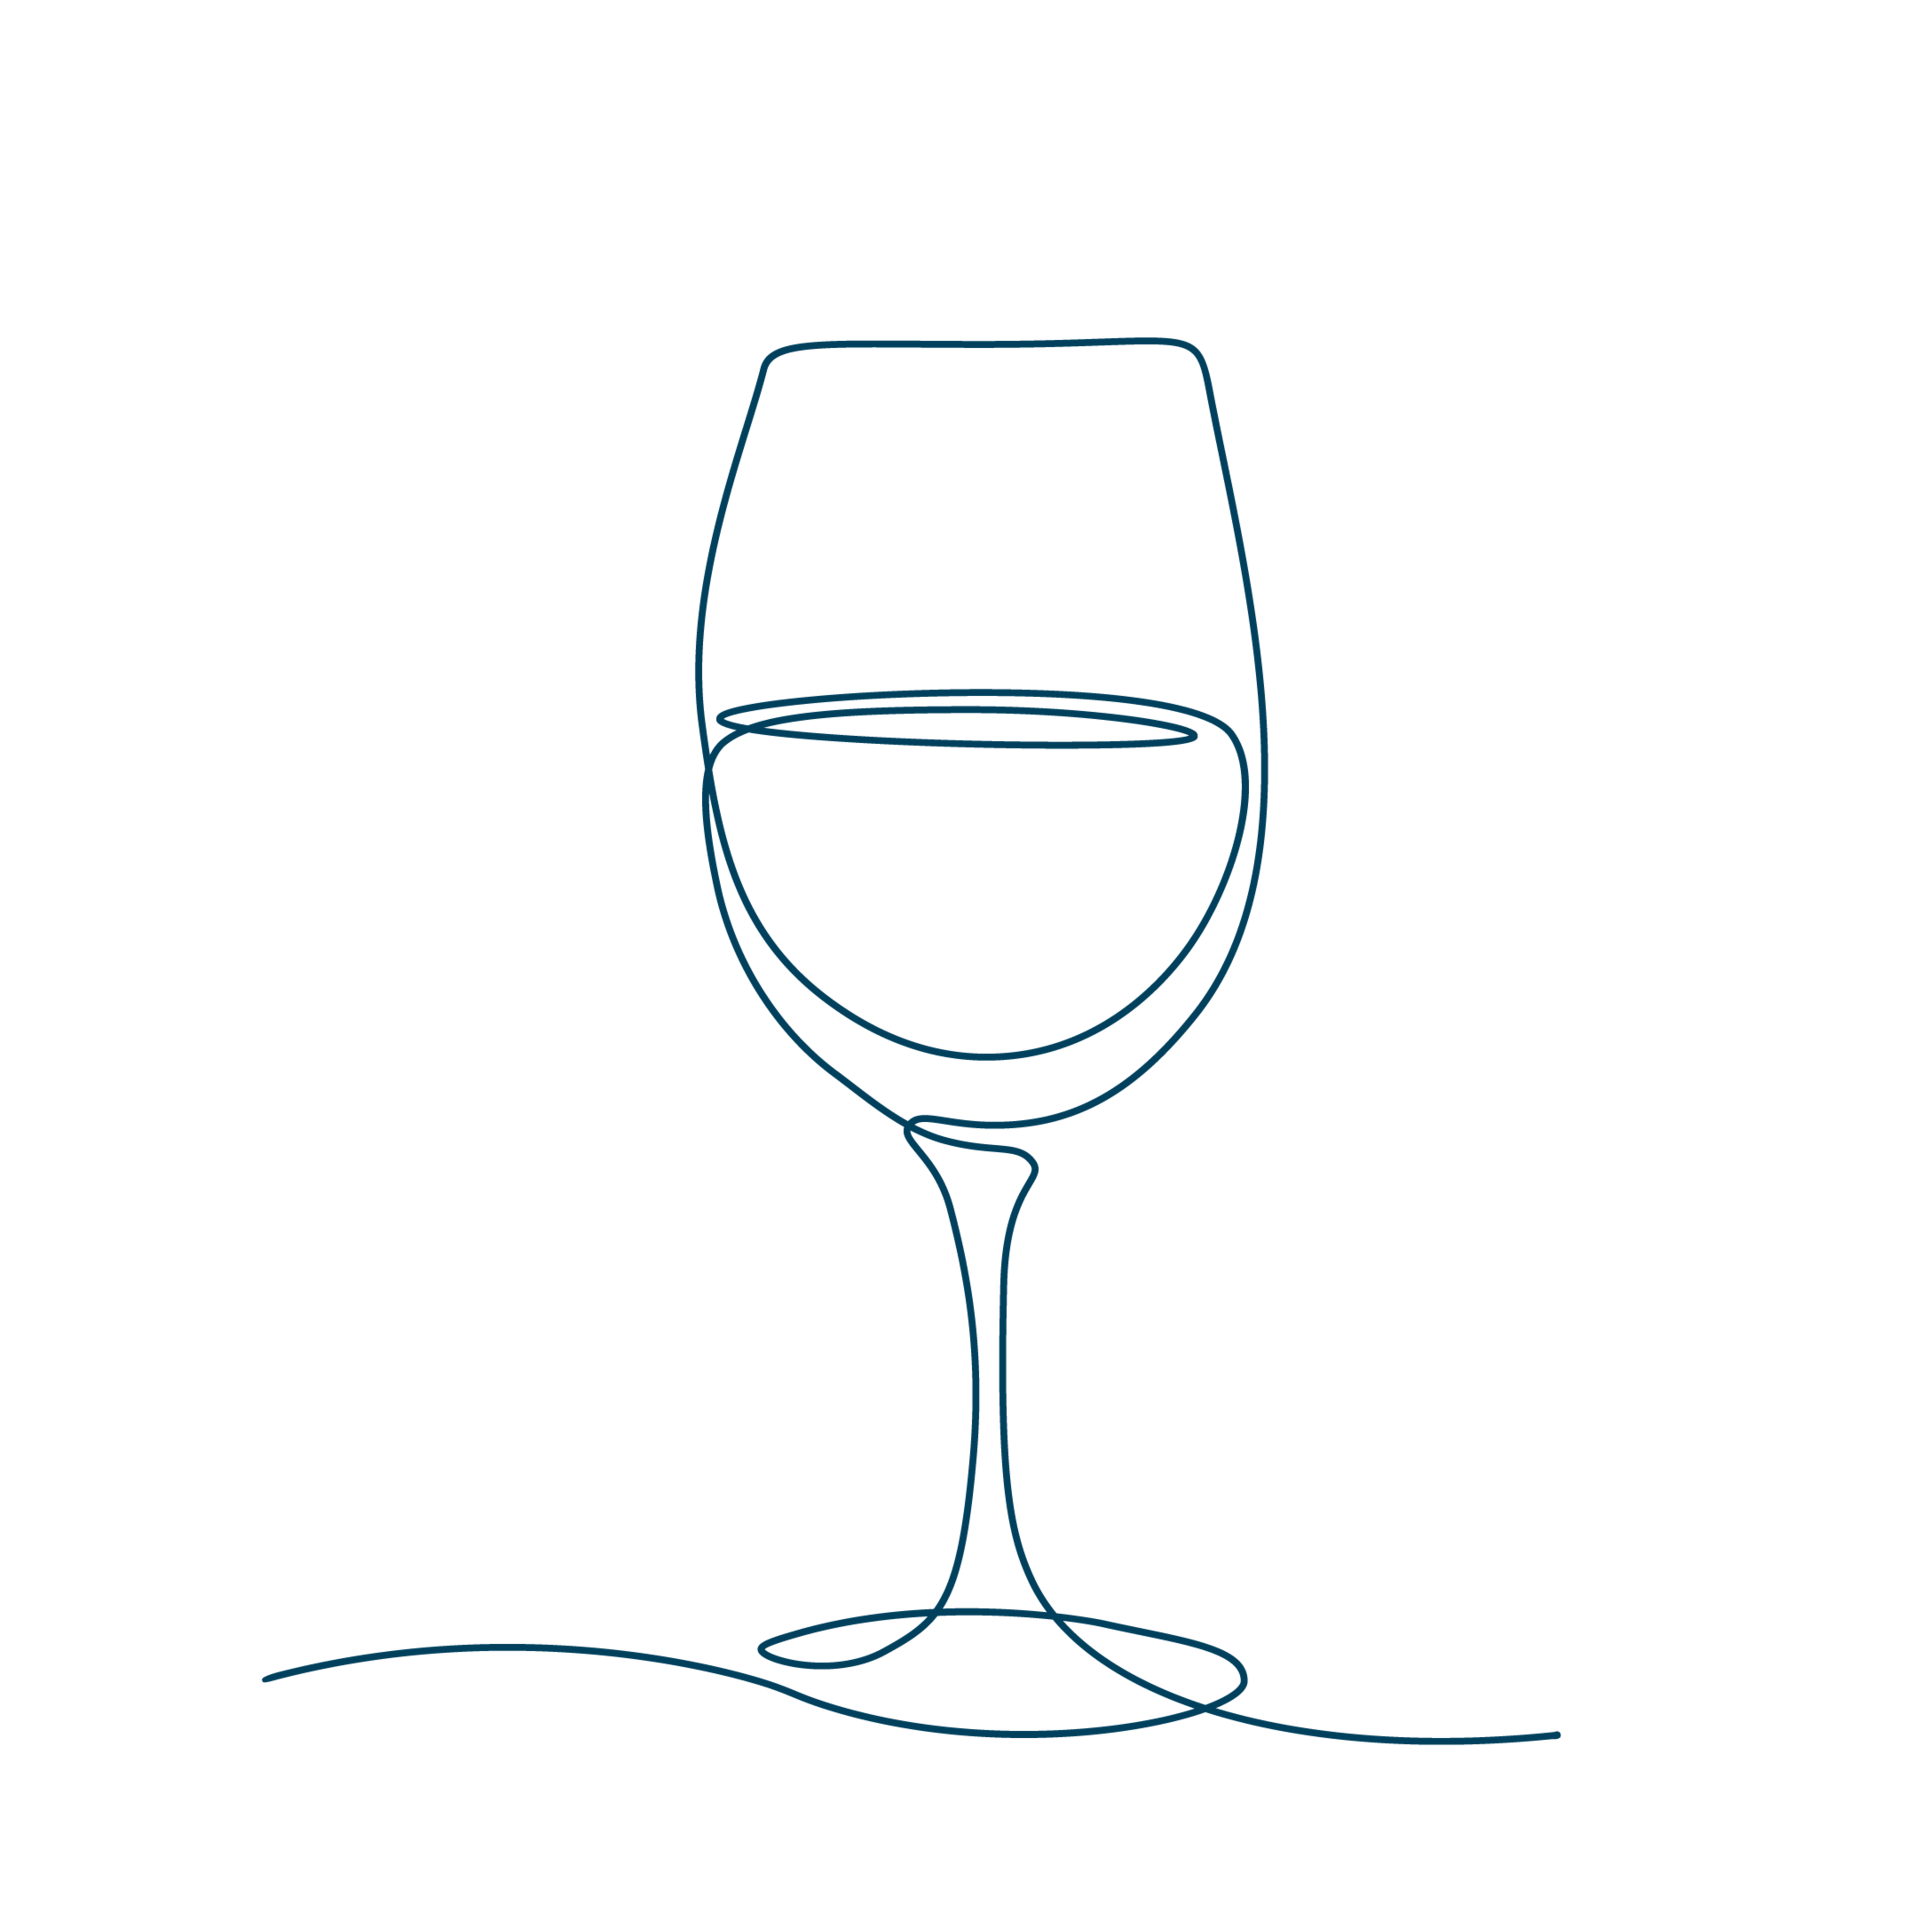 Diese Line-Art-Zeichnung eines Weinglases erinnert daran, für ein besseres Hautbild Genussgifte zu vermeiden.